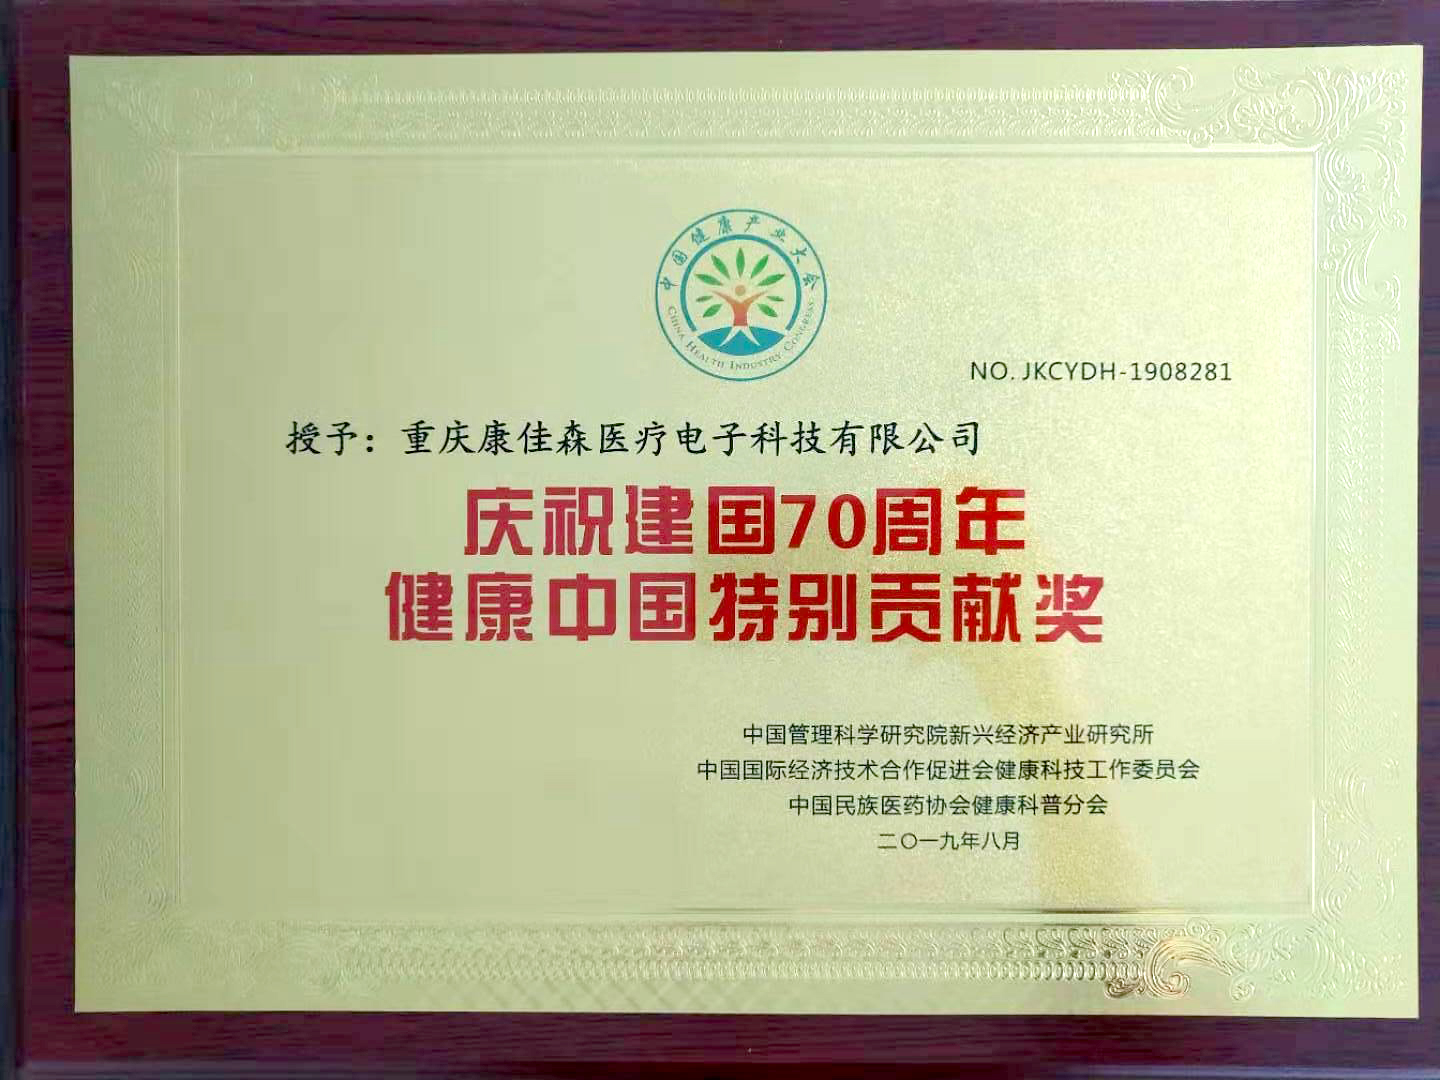 慶祝建國70周年健康中國特別貢獻獎 